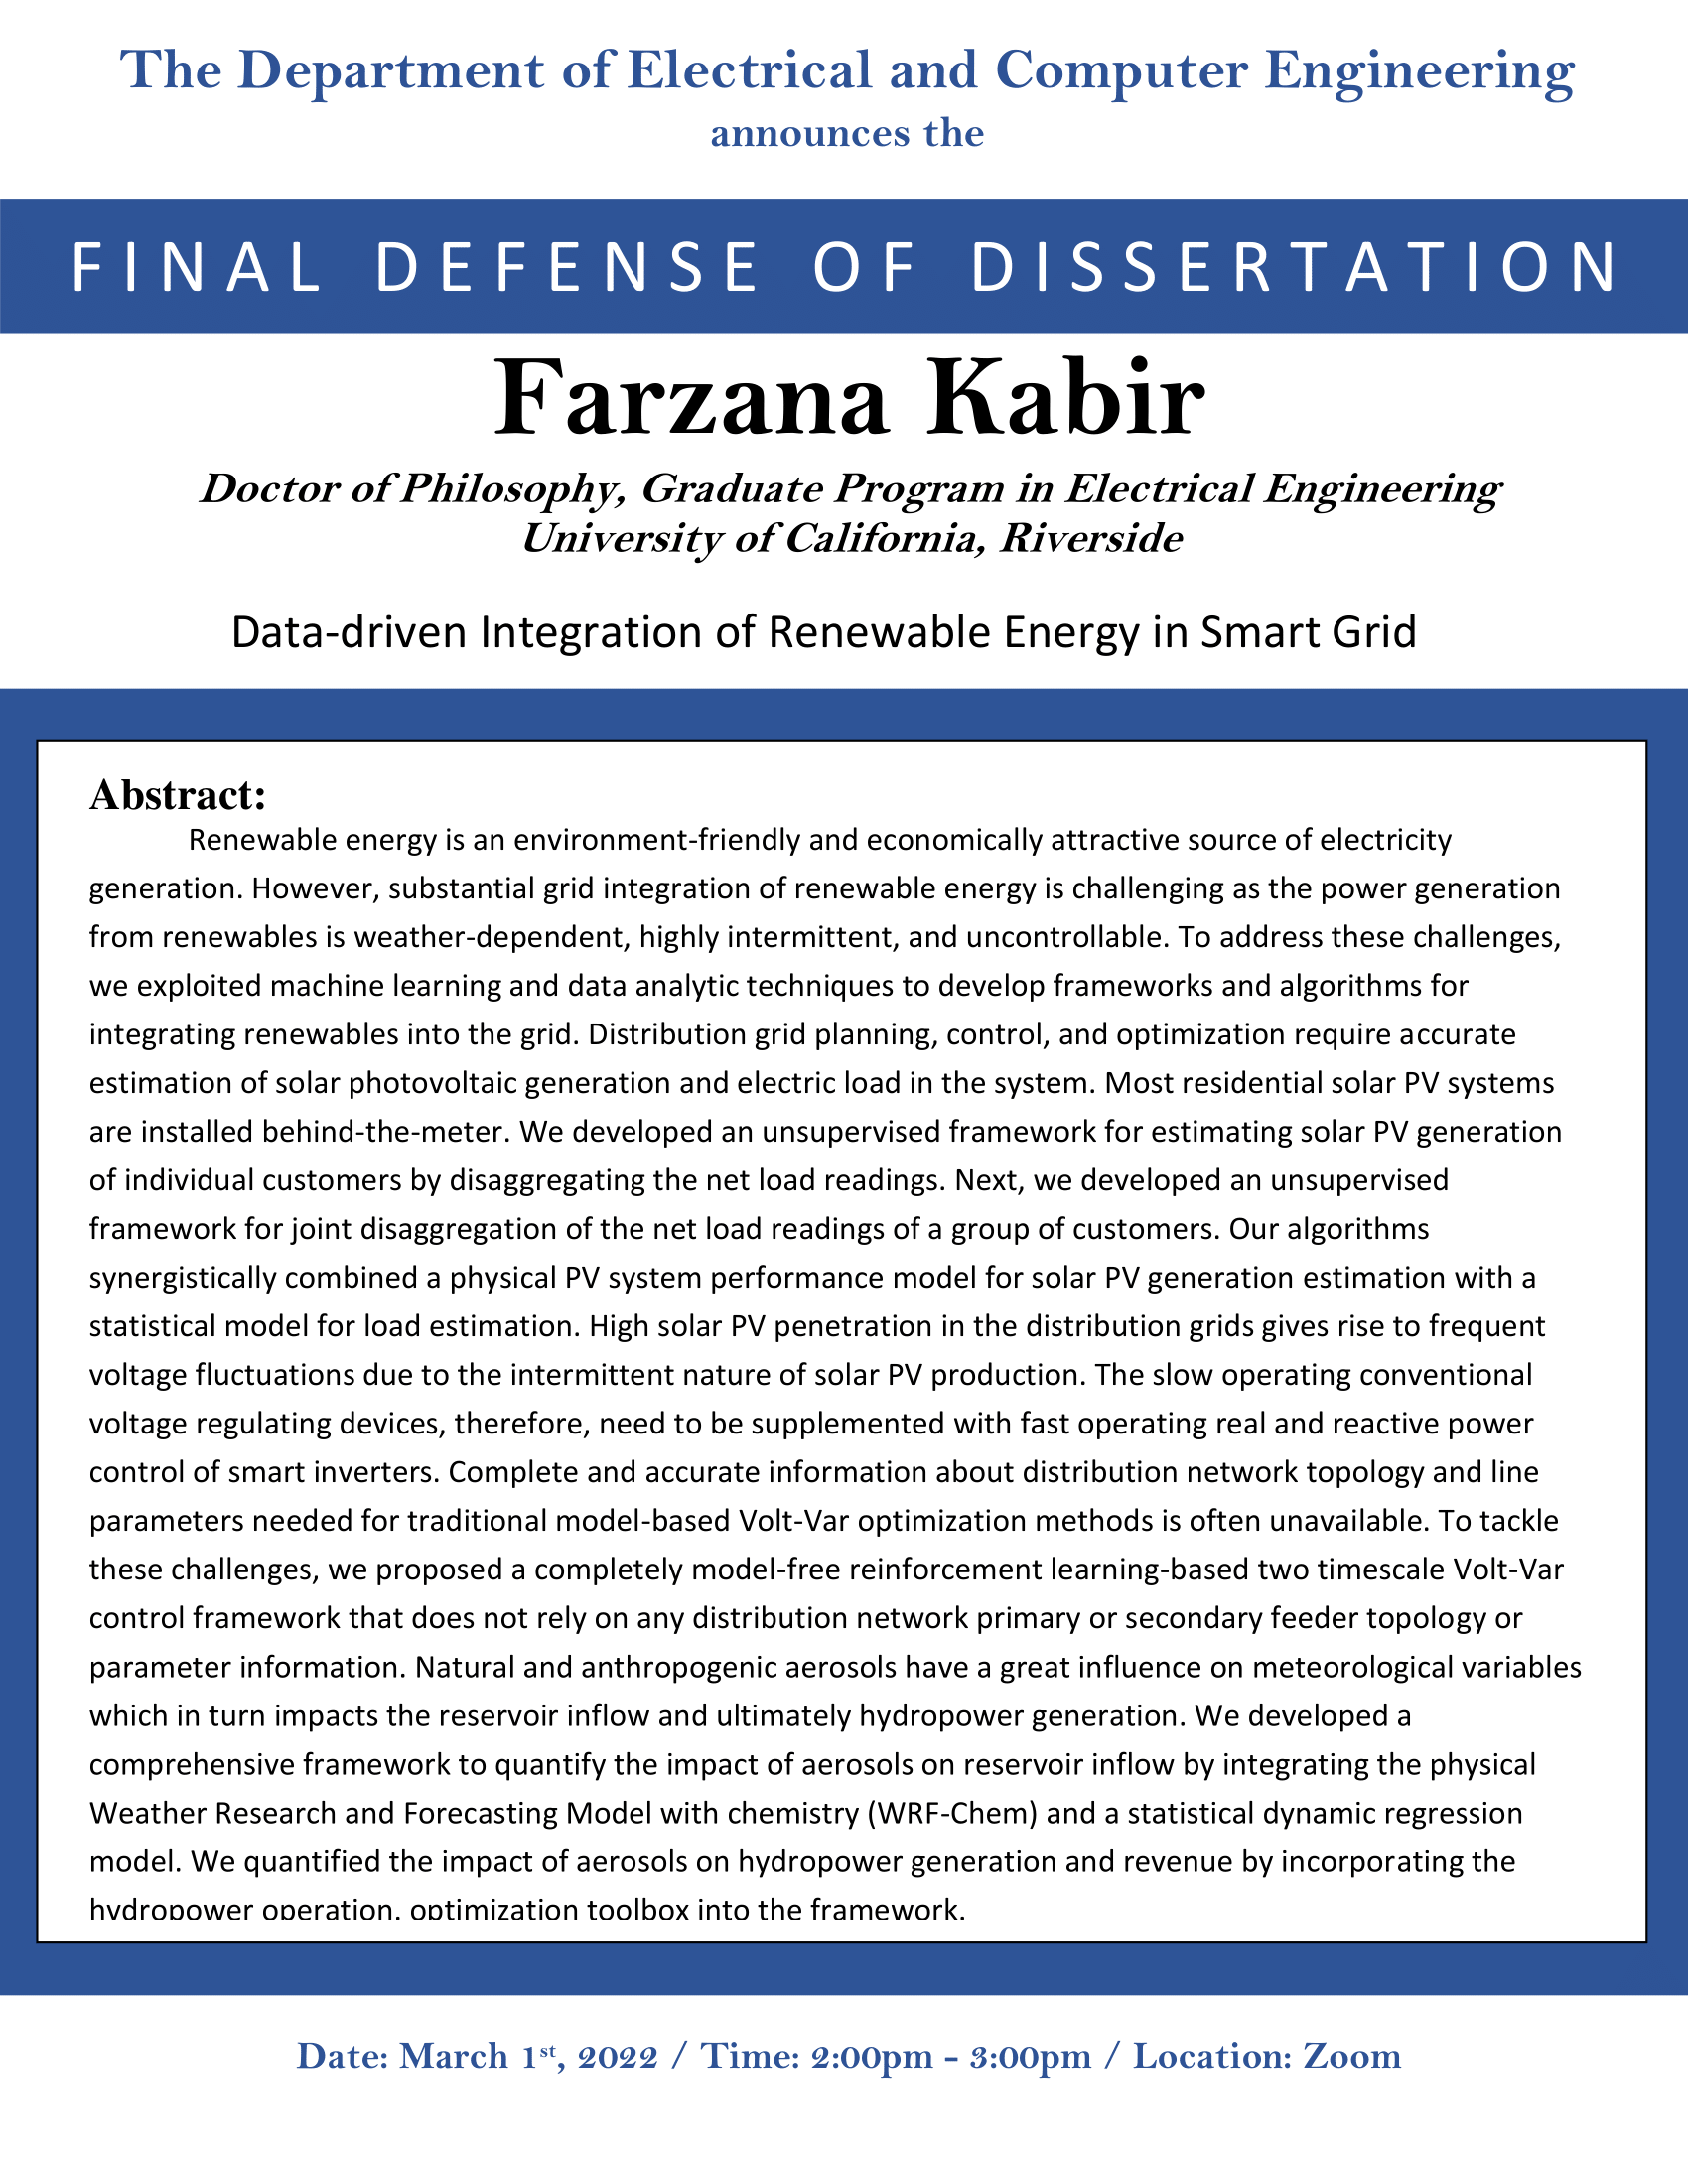 Farzana Kabir Flyer